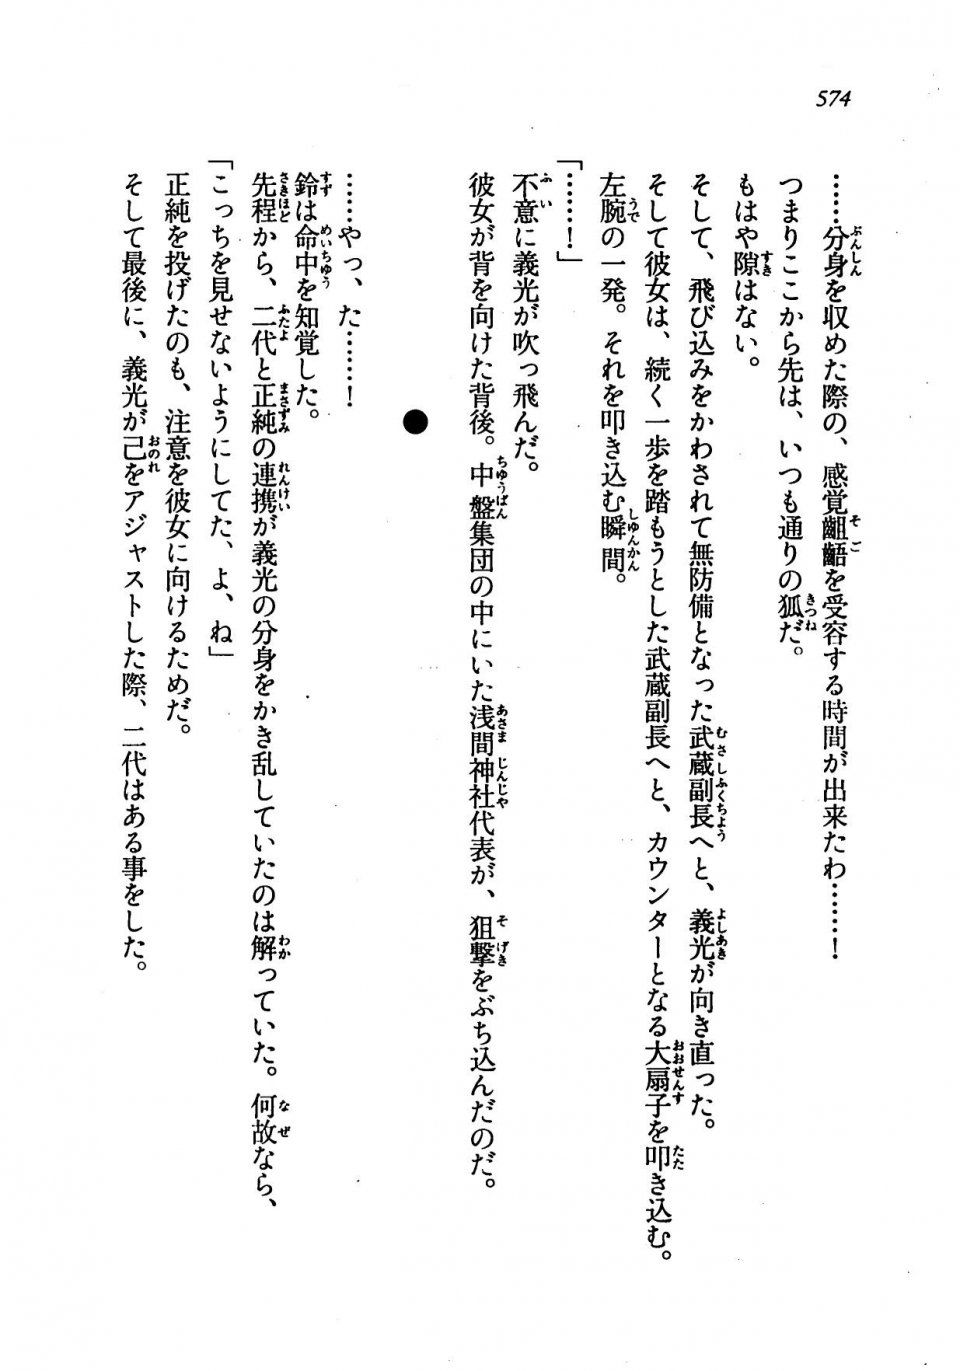 Kyoukai Senjou no Horizon LN Vol 19(8A) - Photo #574